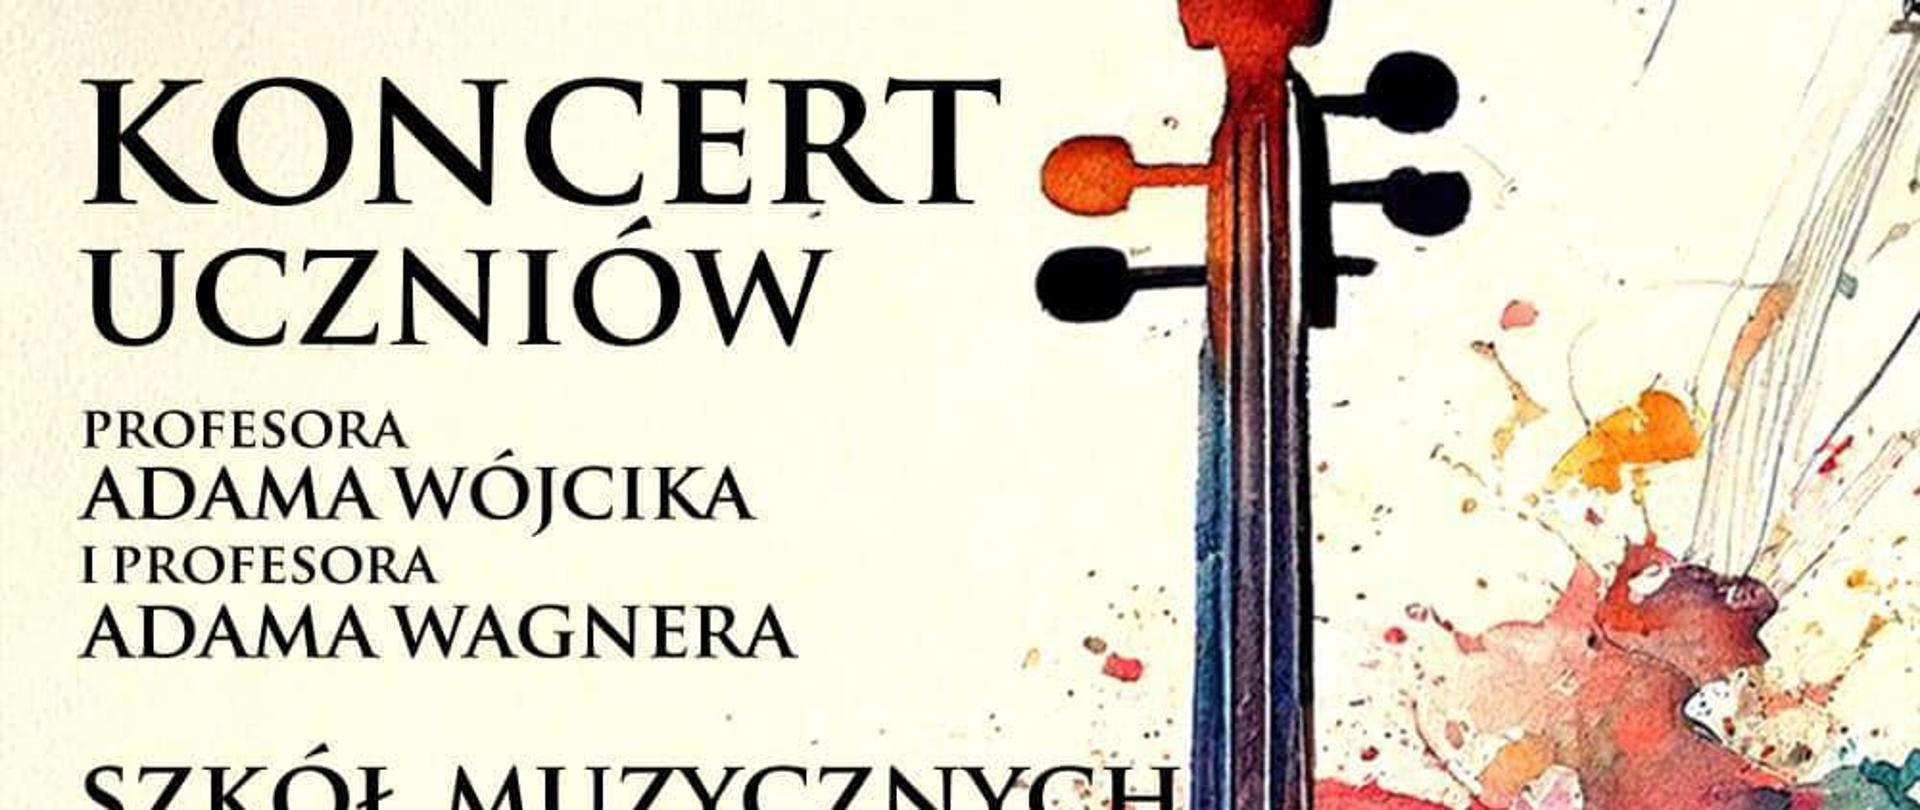 Koncert skrzypcowy uczniów - plakat